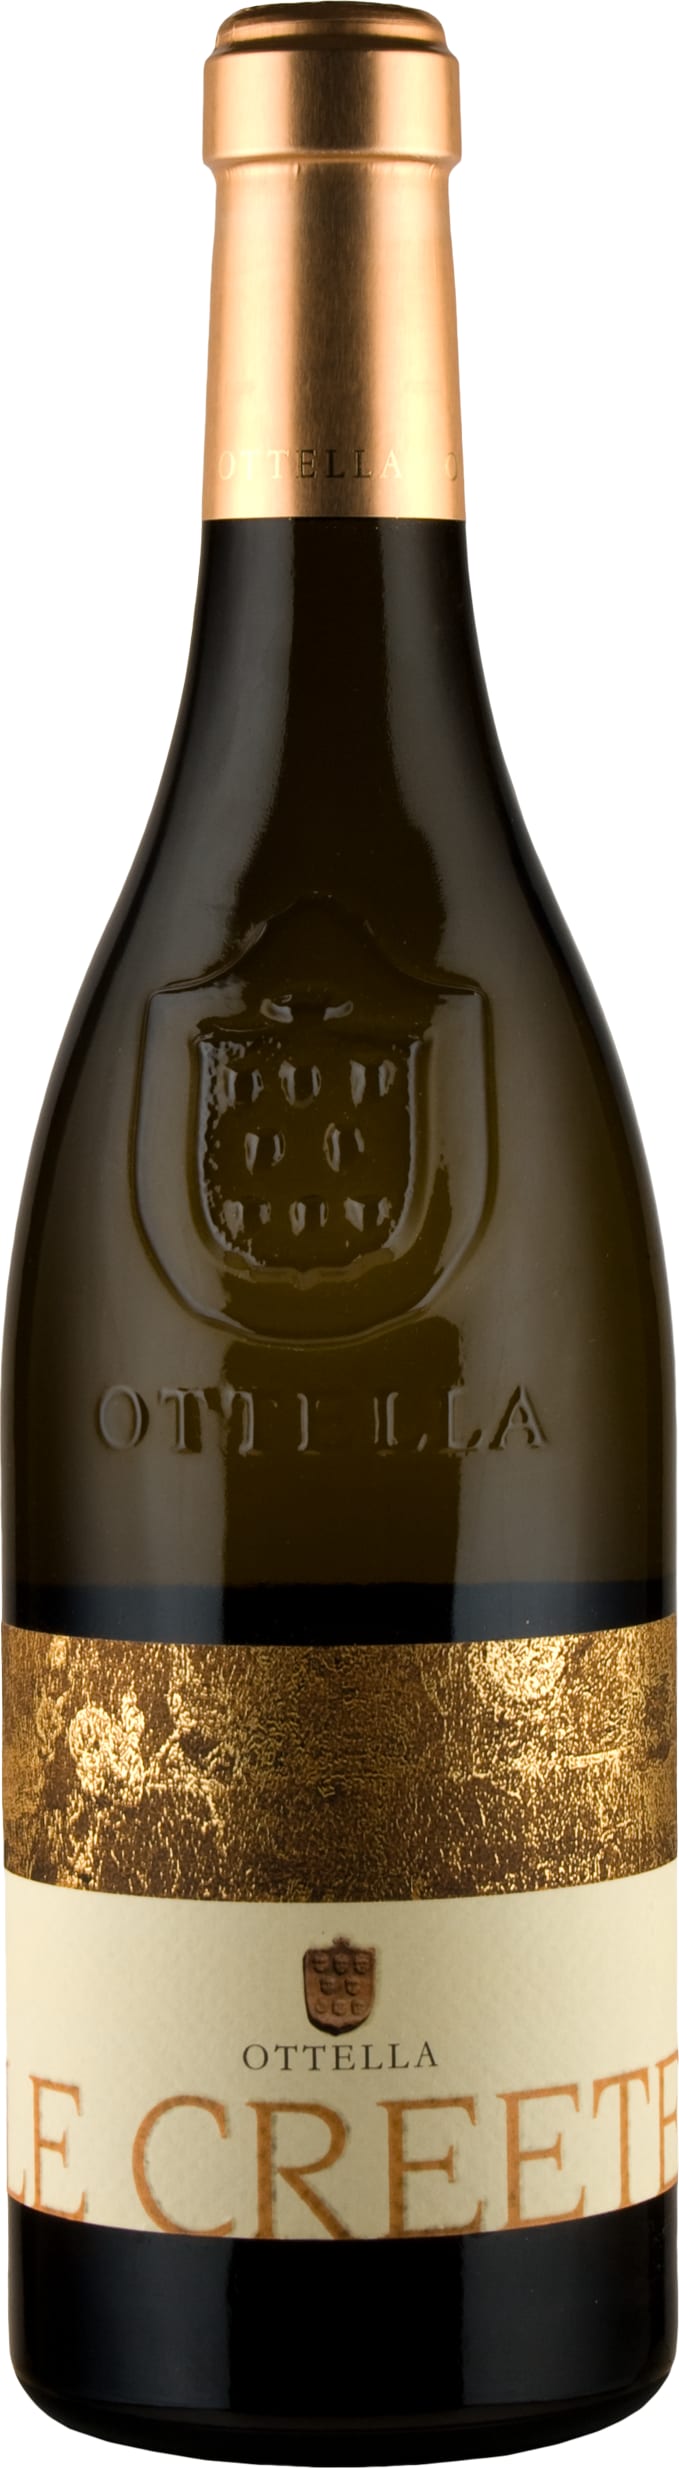 Azienda Agricola Ottella Le Creete Lugana 2022 75cl - Buy Azienda Agricola Ottella Wines from GREAT WINES DIRECT wine shop